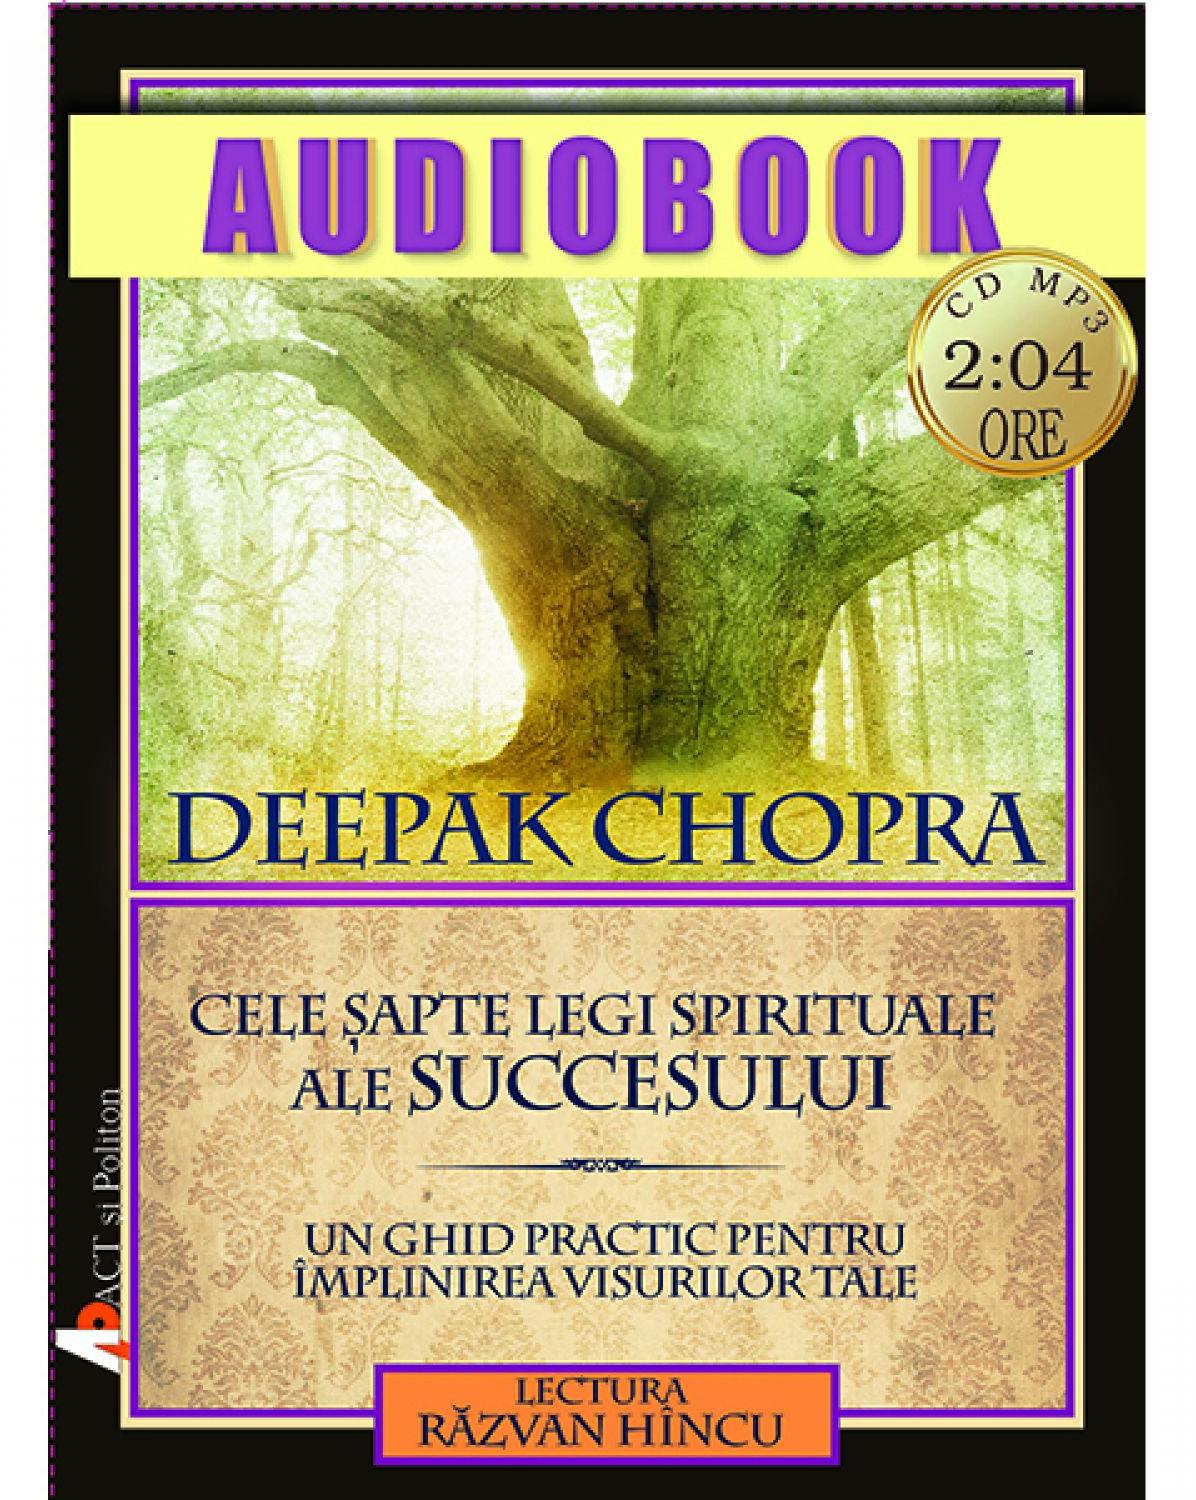 Audiobook - Cele sapte legi spirituale ale succesului - Deepak Chopra